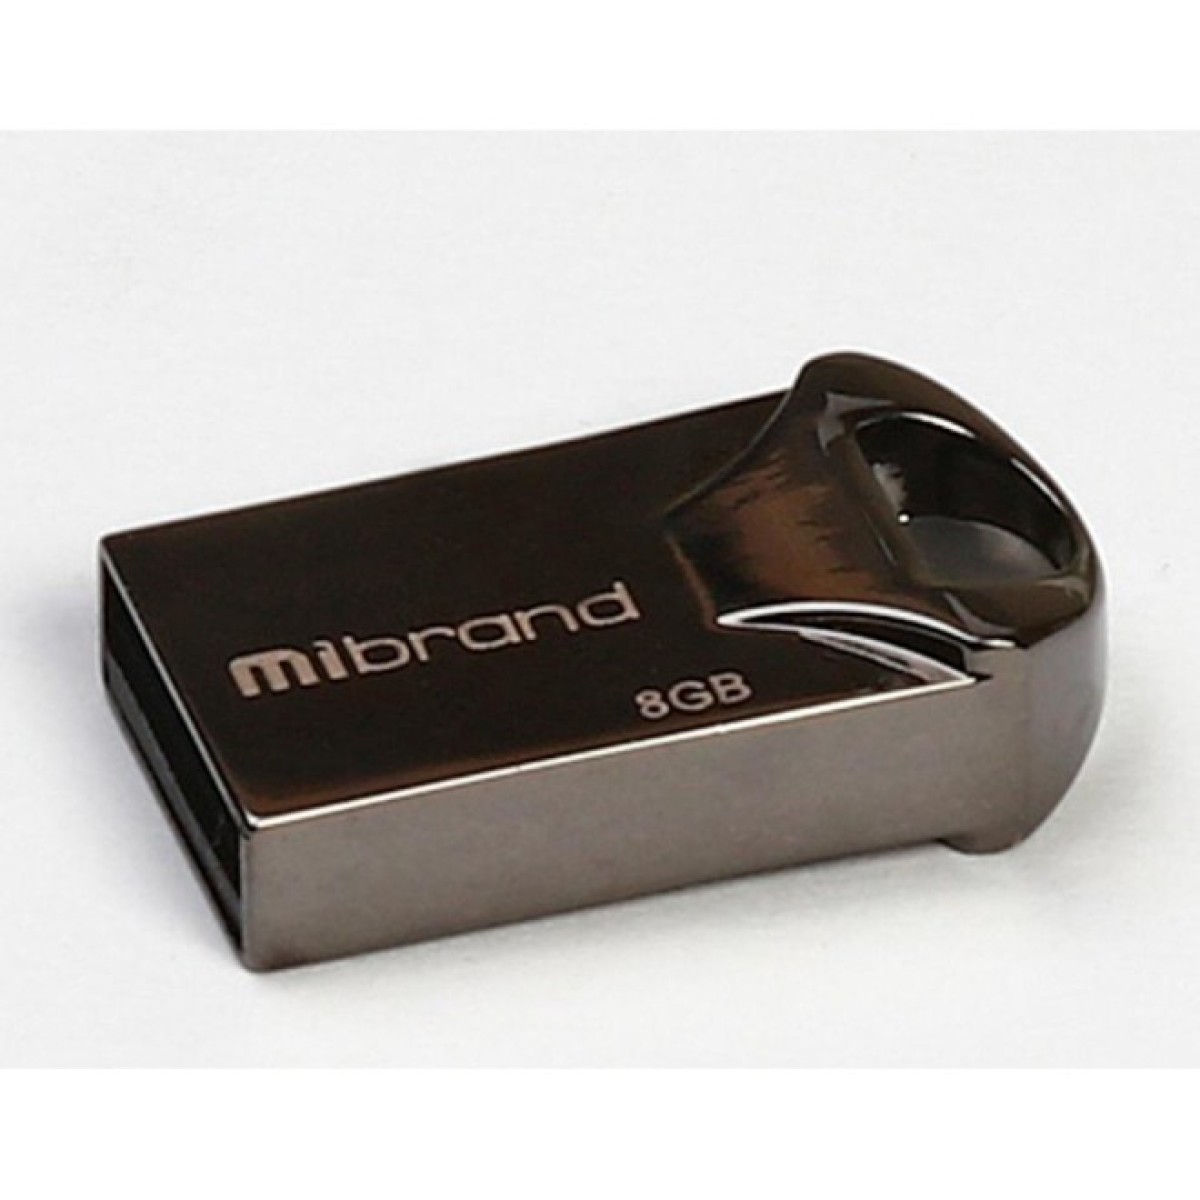 USB флеш накопитель Mibrand 8GB Hawk Black USB 2.0 (MI2.0/HA8M1B) 256_256.jpg